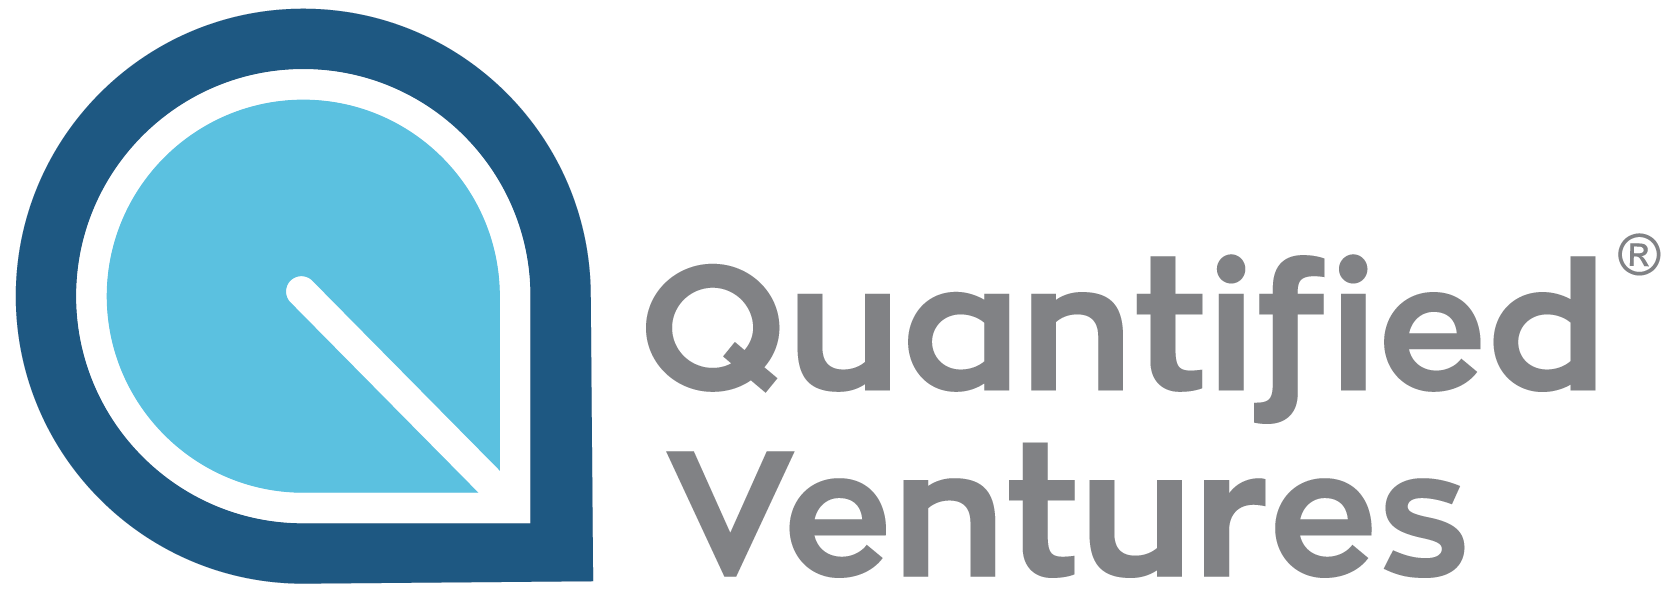 Quantified Ventures